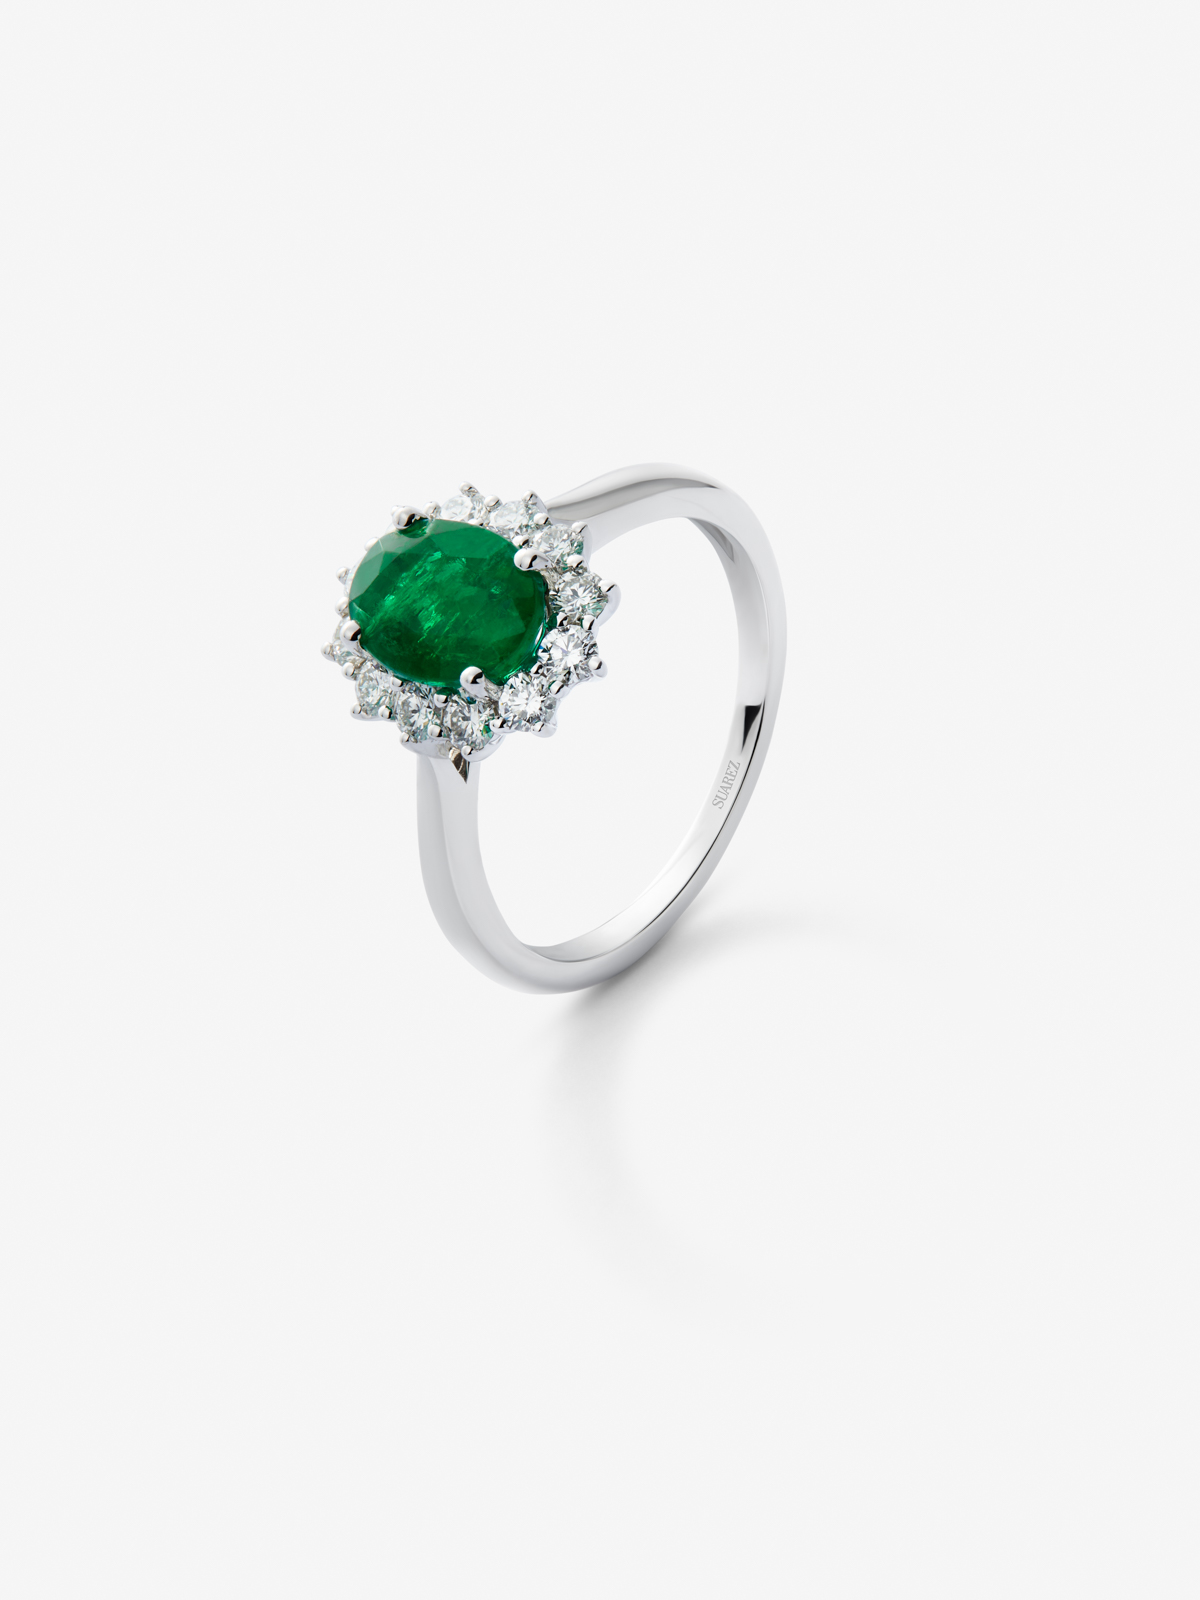 Anillo de oro blanco de 18K con esmeralda verde en talla oval de 0,77 cts y diamantes en talla brillante de 0,24 cts